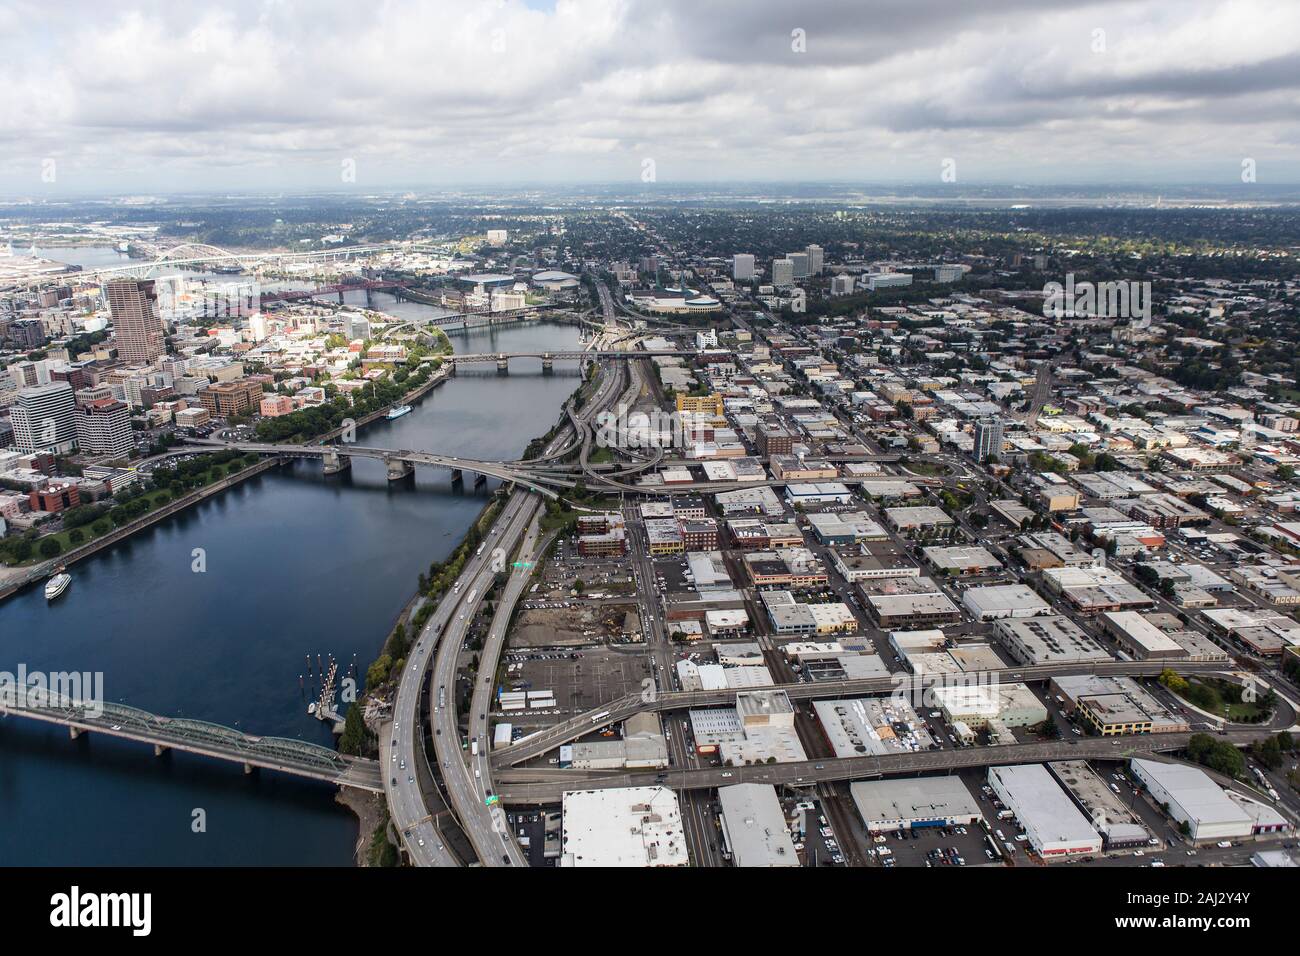 Vue aérienne de rues, bâtiments industriels et la Willamette River dans l'Est de Portland, Oregon, USA. Banque D'Images